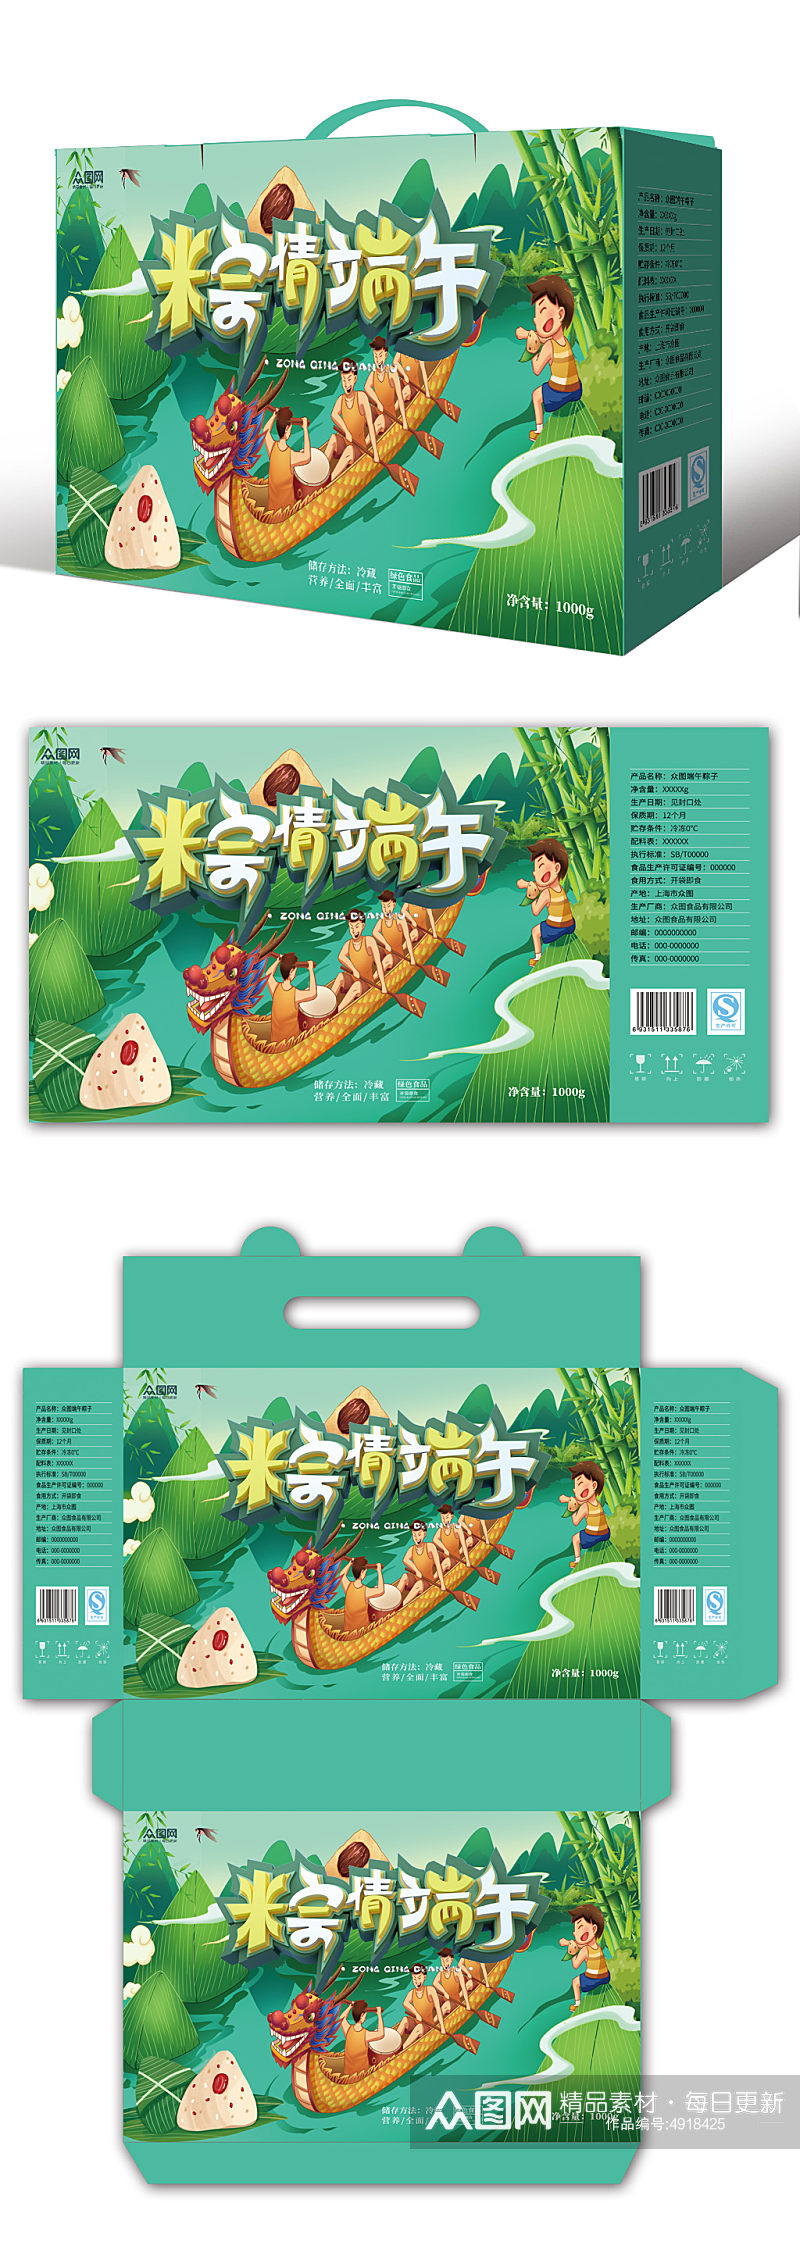 绿色大气端午节美食粽子包装礼盒设计素材